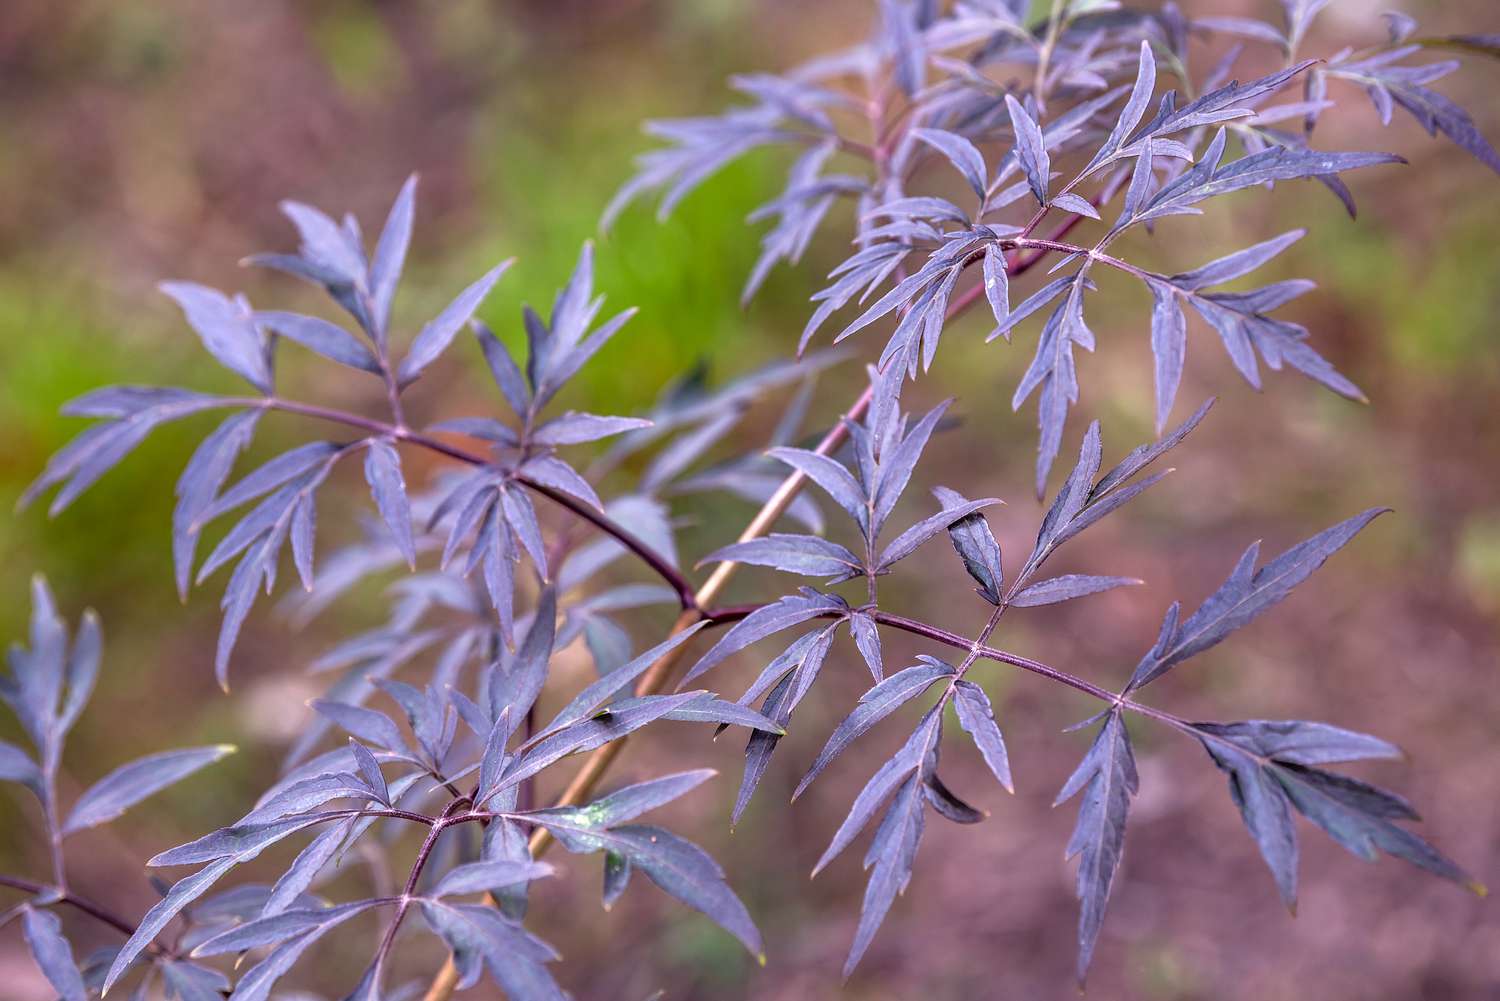 Sambucus black beauty 'Gerda' Pflanze mit schmalen violetten Blättern in Nahaufnahme